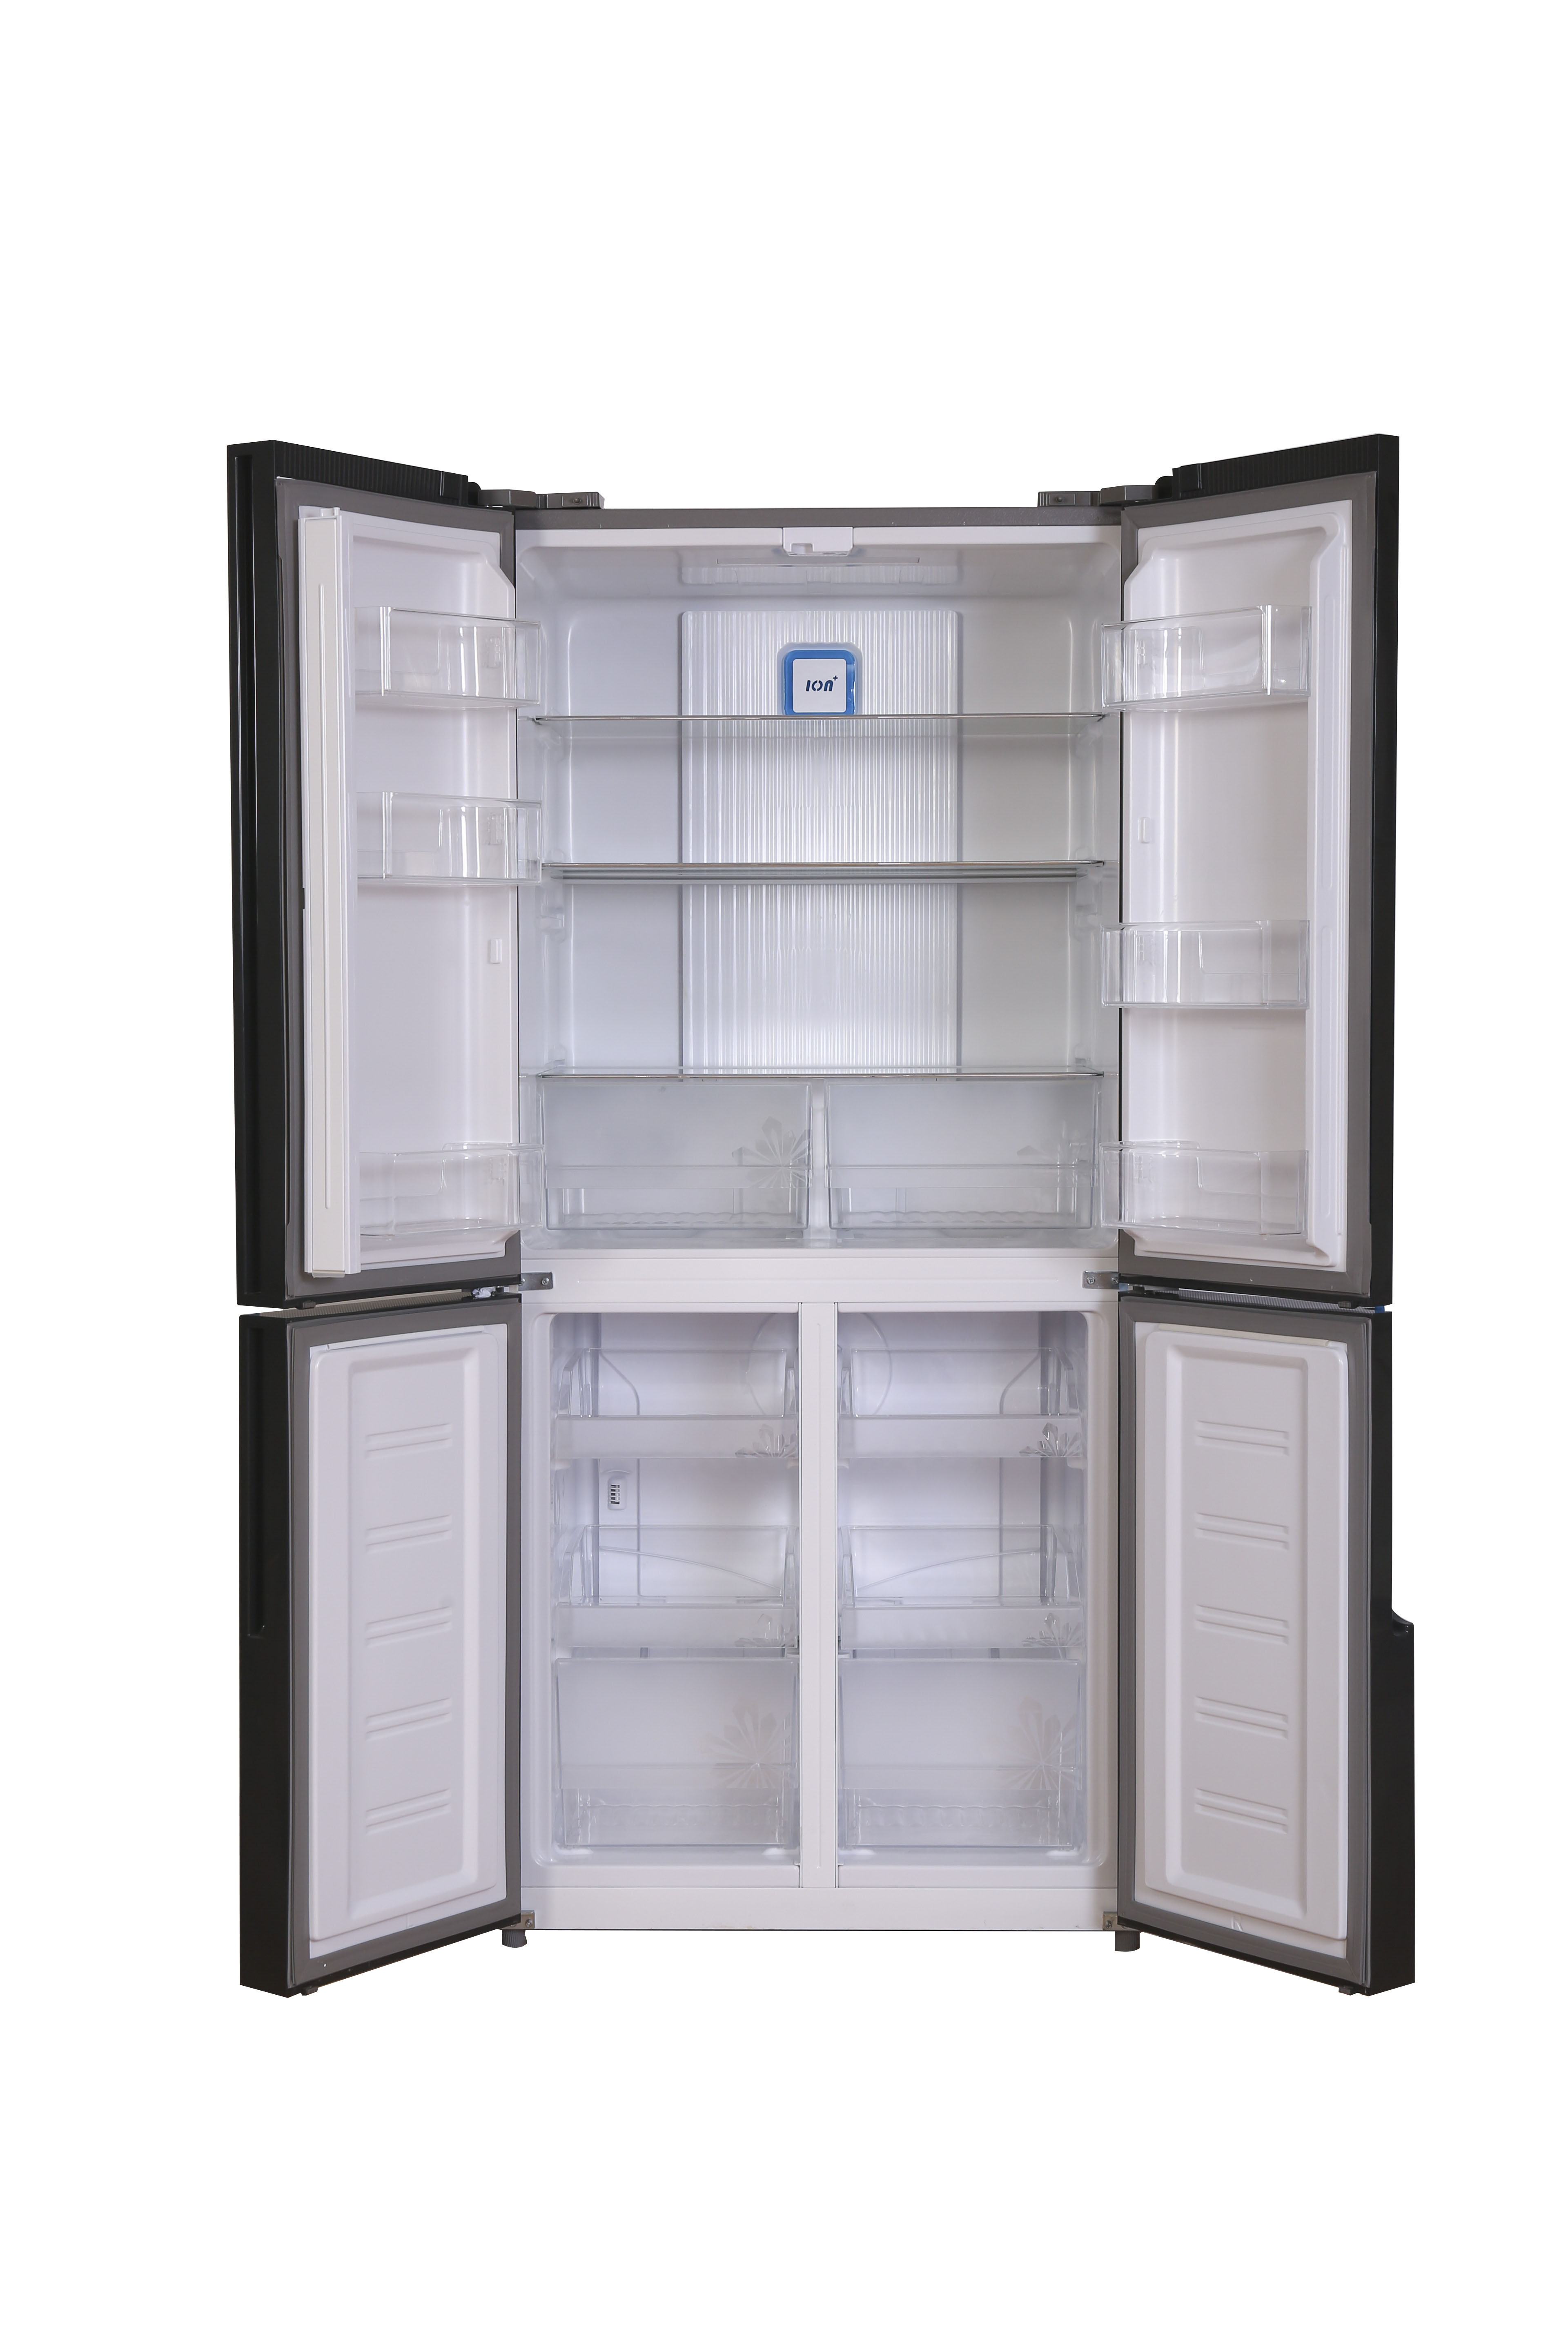 Холодильник иваново каталог товаров и цены